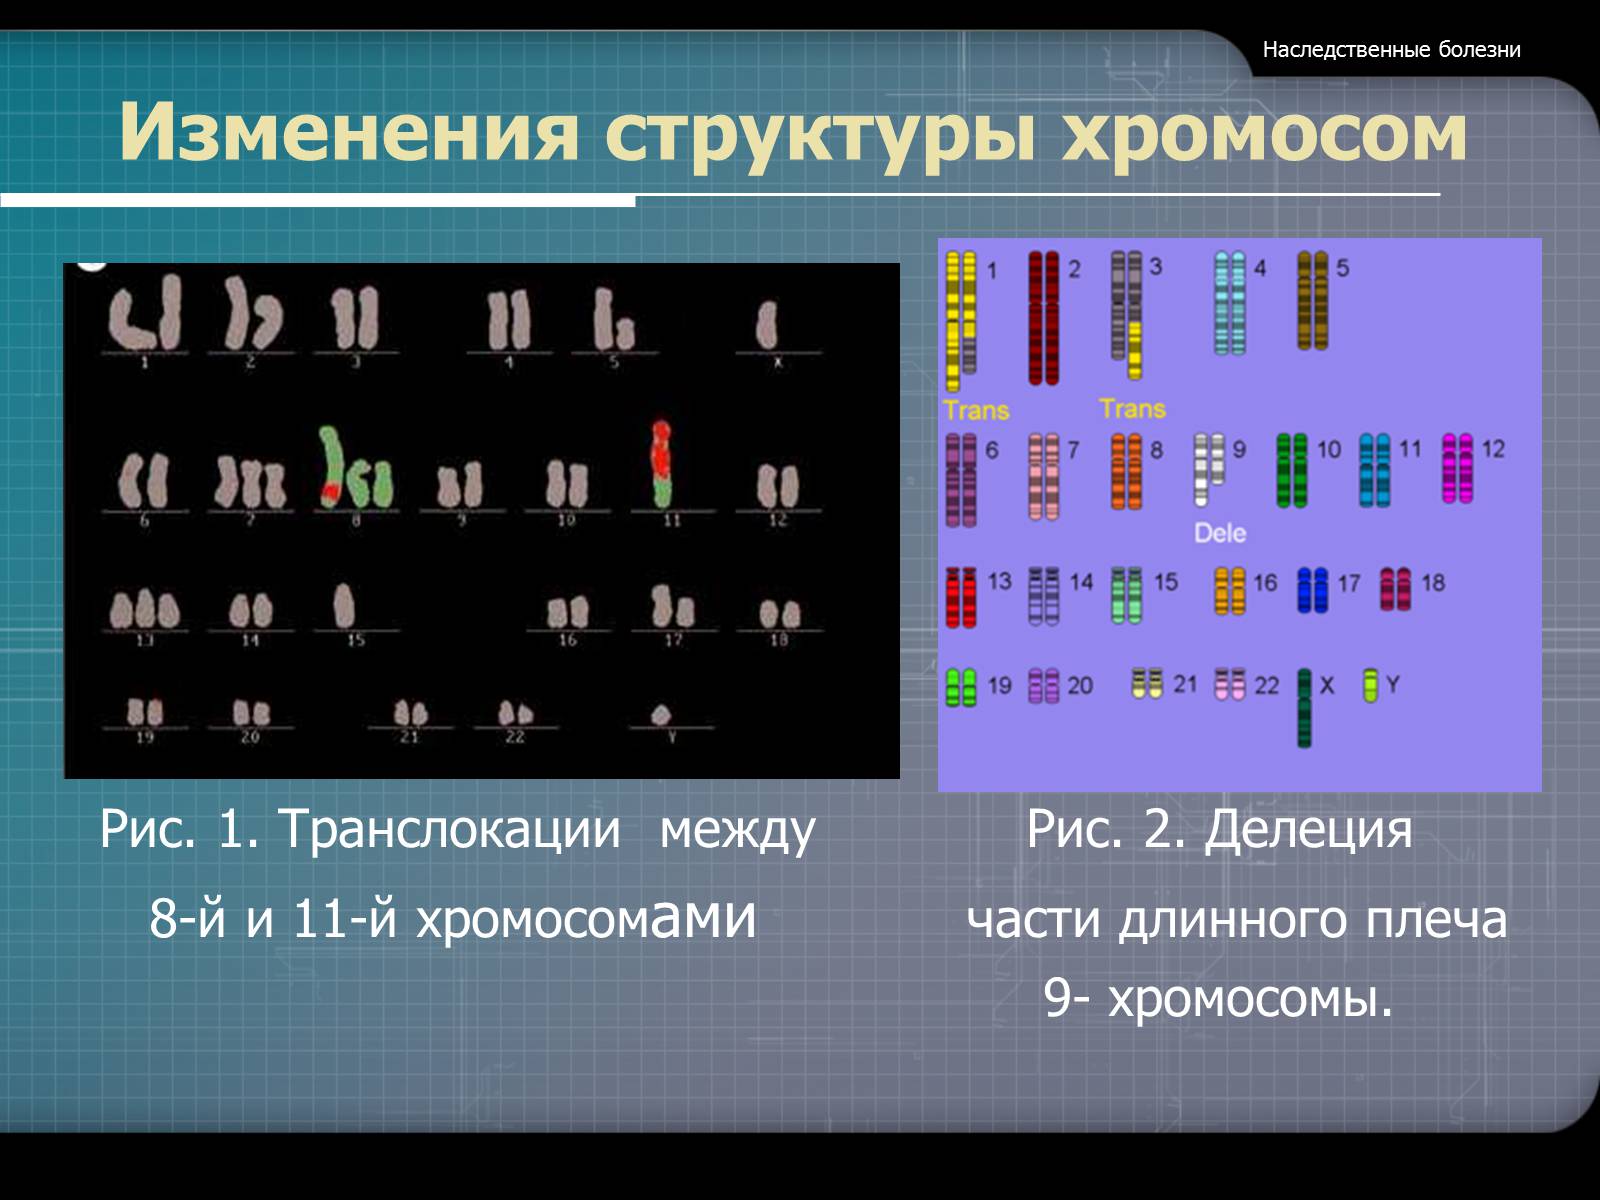 Наследственные заболевания связанные с хромосомами. Структурные изменения хромосом. Изменение структуры хромосом. Изменение структуры хромосом болезни. Измененная структура хромосом.